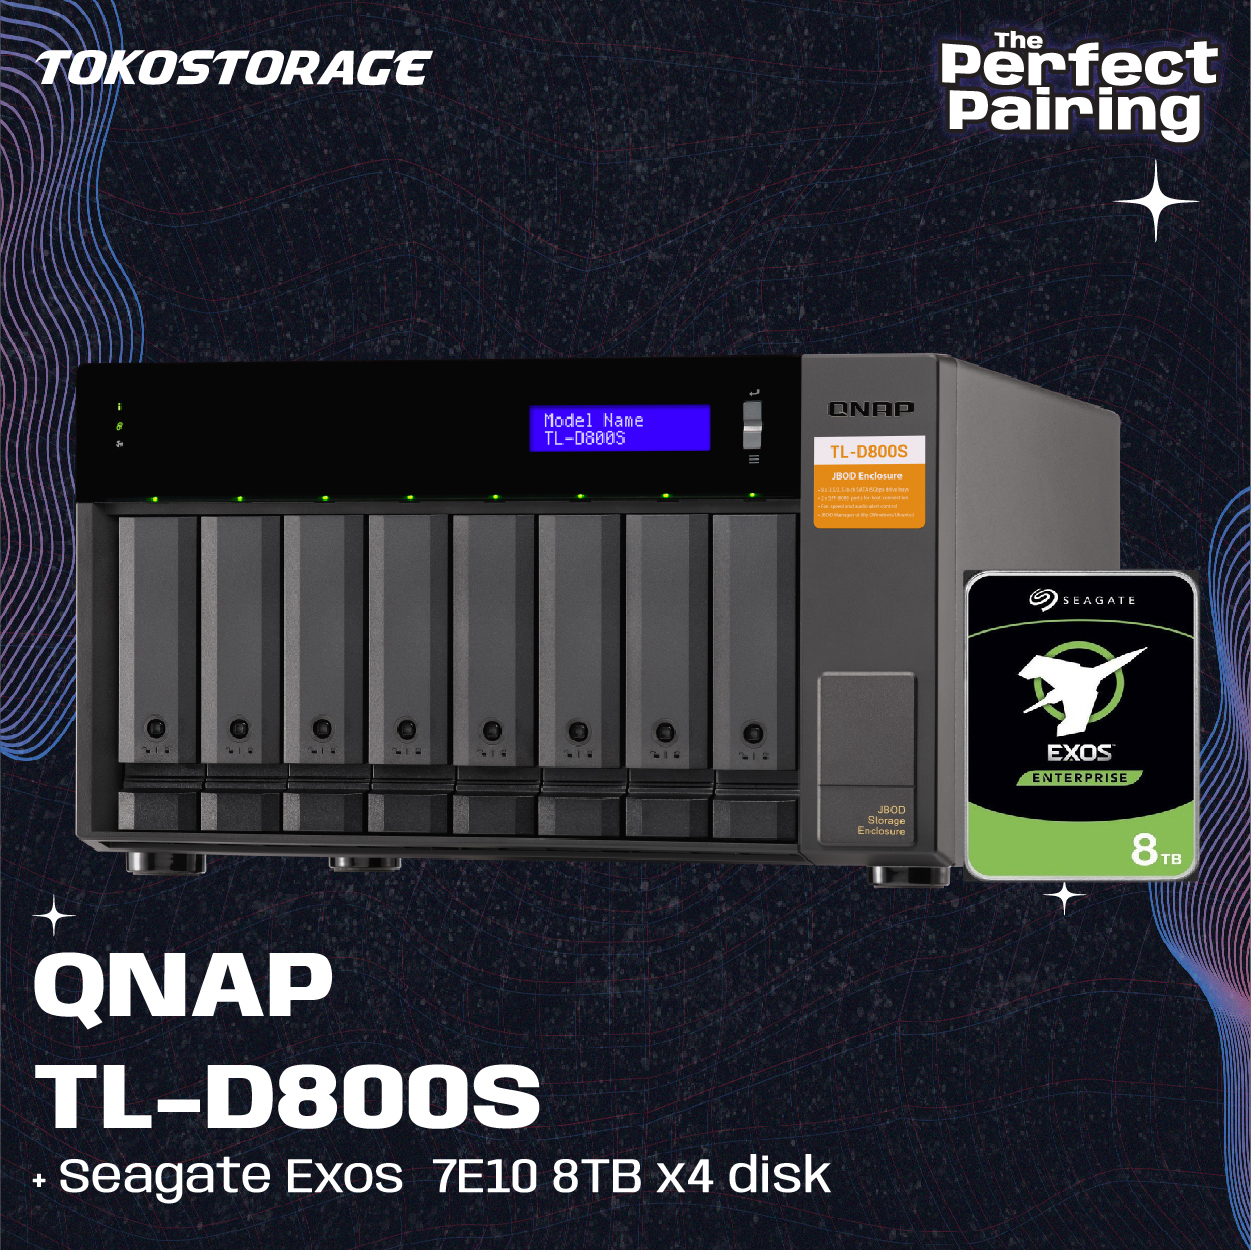 QNAP TL-D800S dan HDD Seagate EXOS 8TB - 4 x 8TB